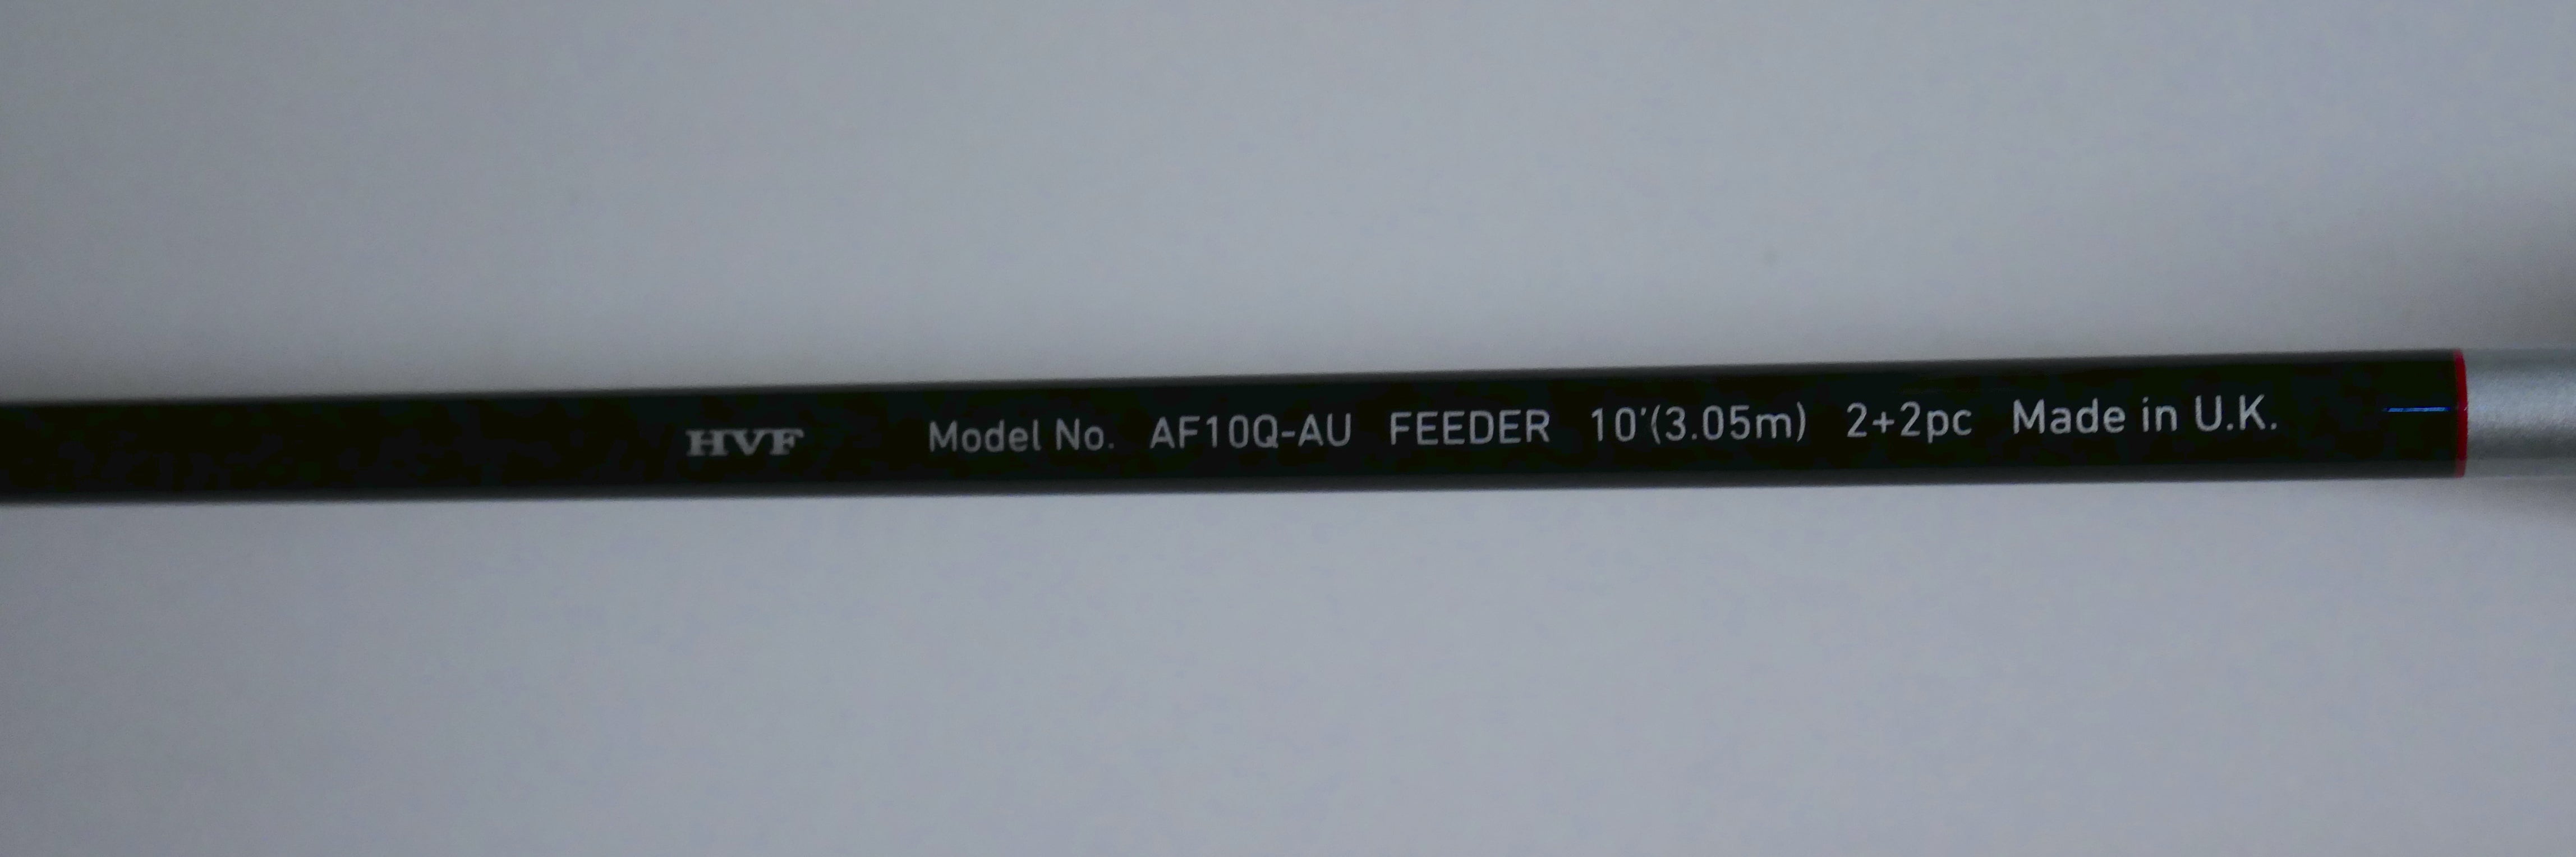 Daiwa Airity X45 10ft Feeder AF10Q-AU – Fish For Tackle